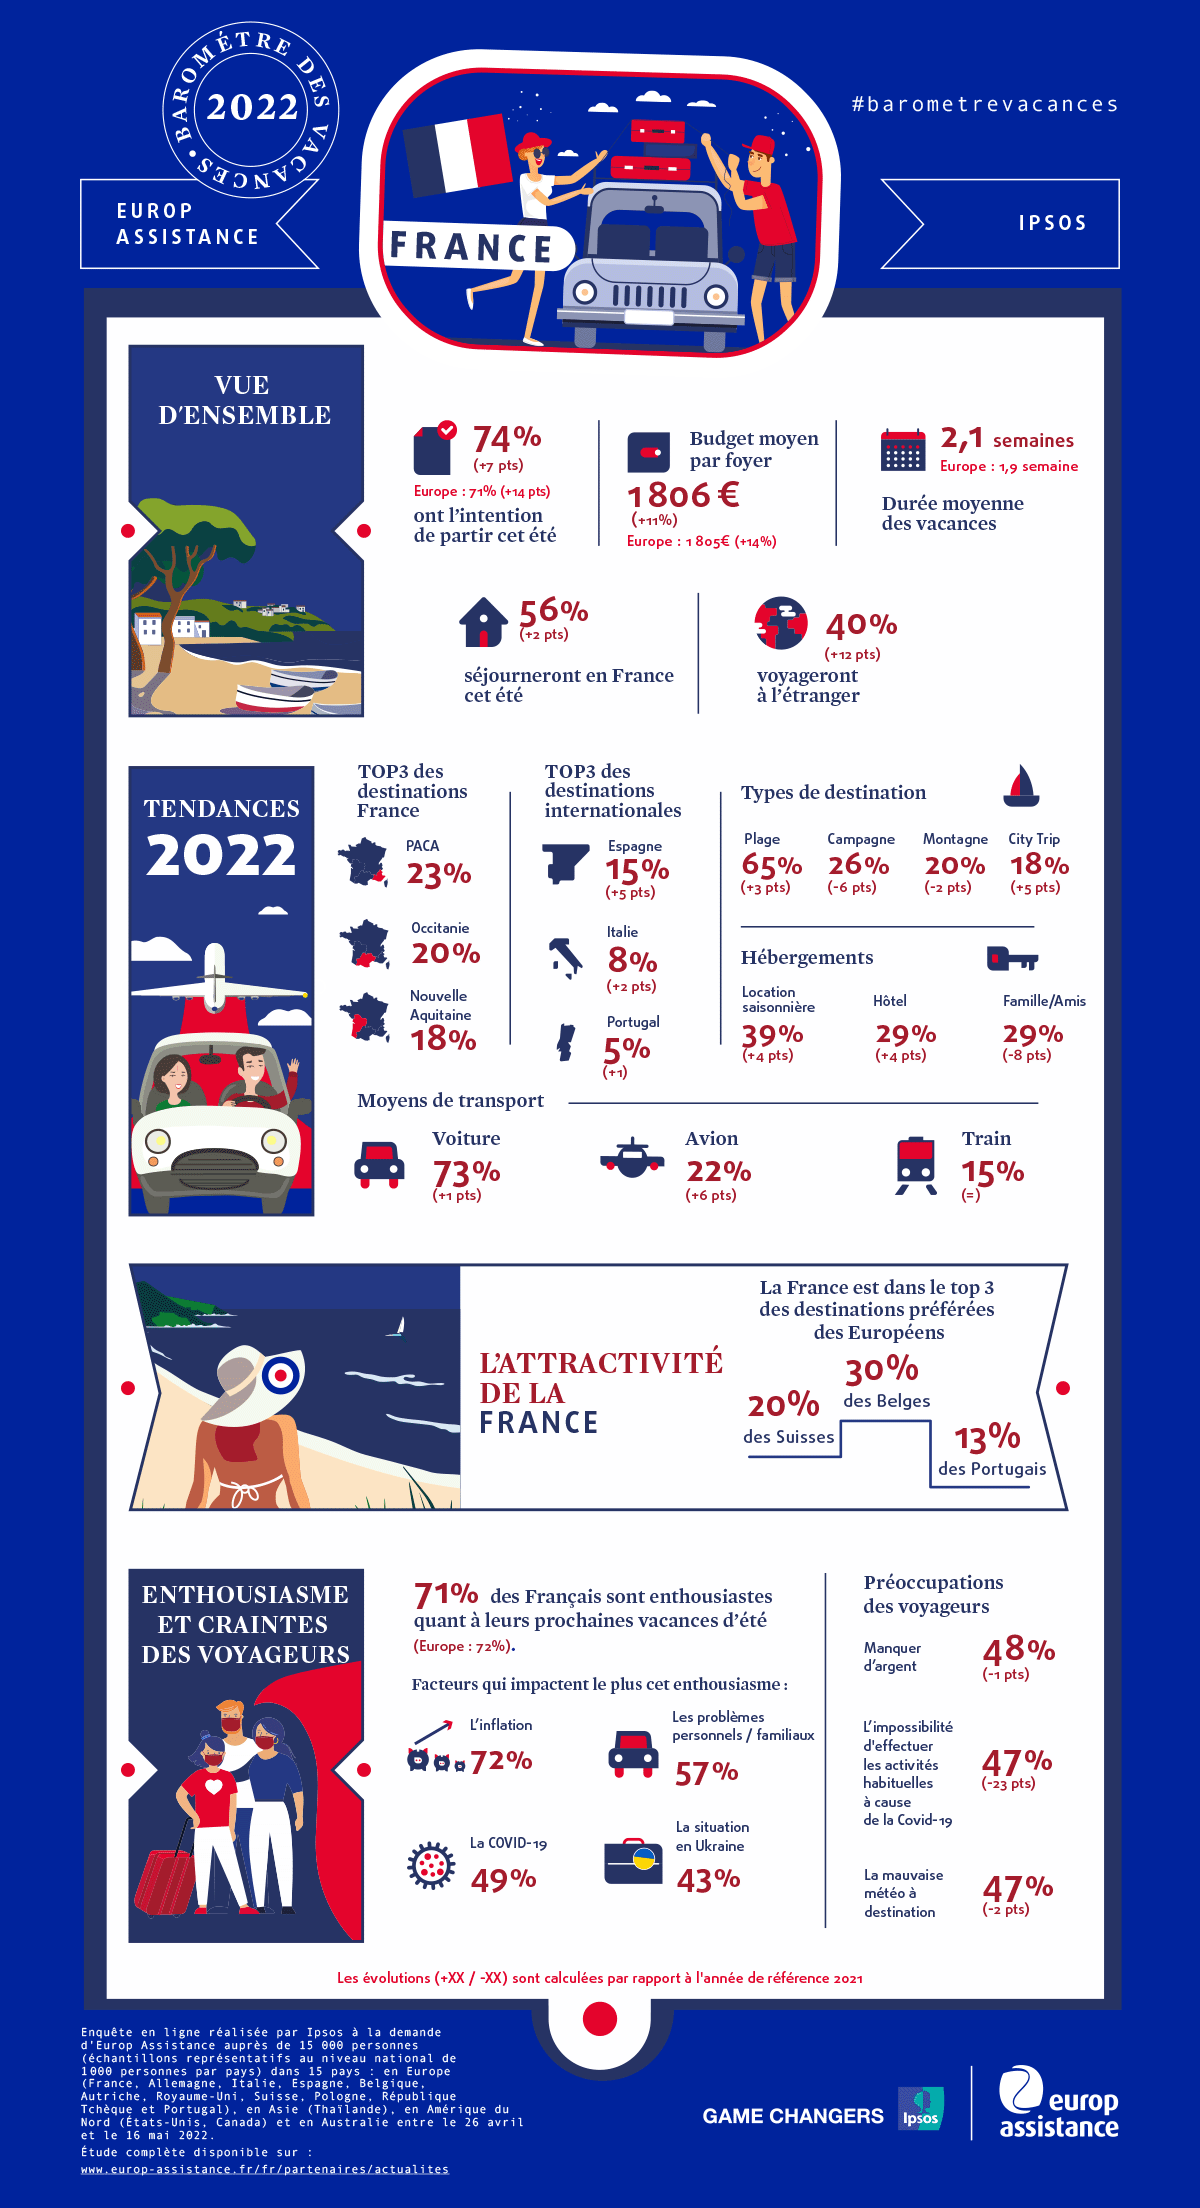 Baromètre des vacances 2022 - Chiffres clés France